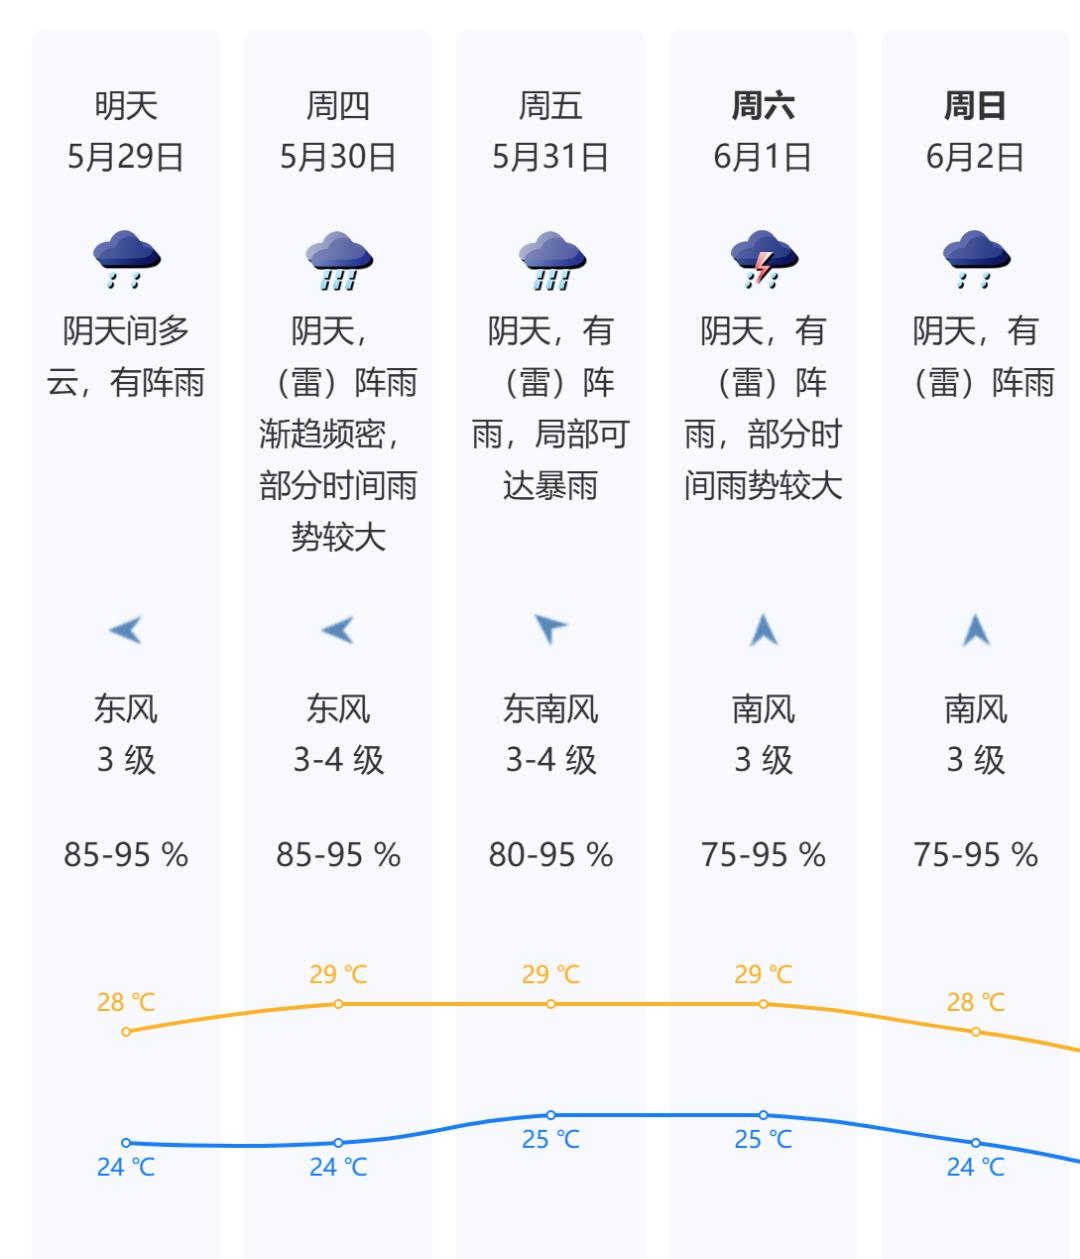 深圳记录到闪电372次!接下来天气